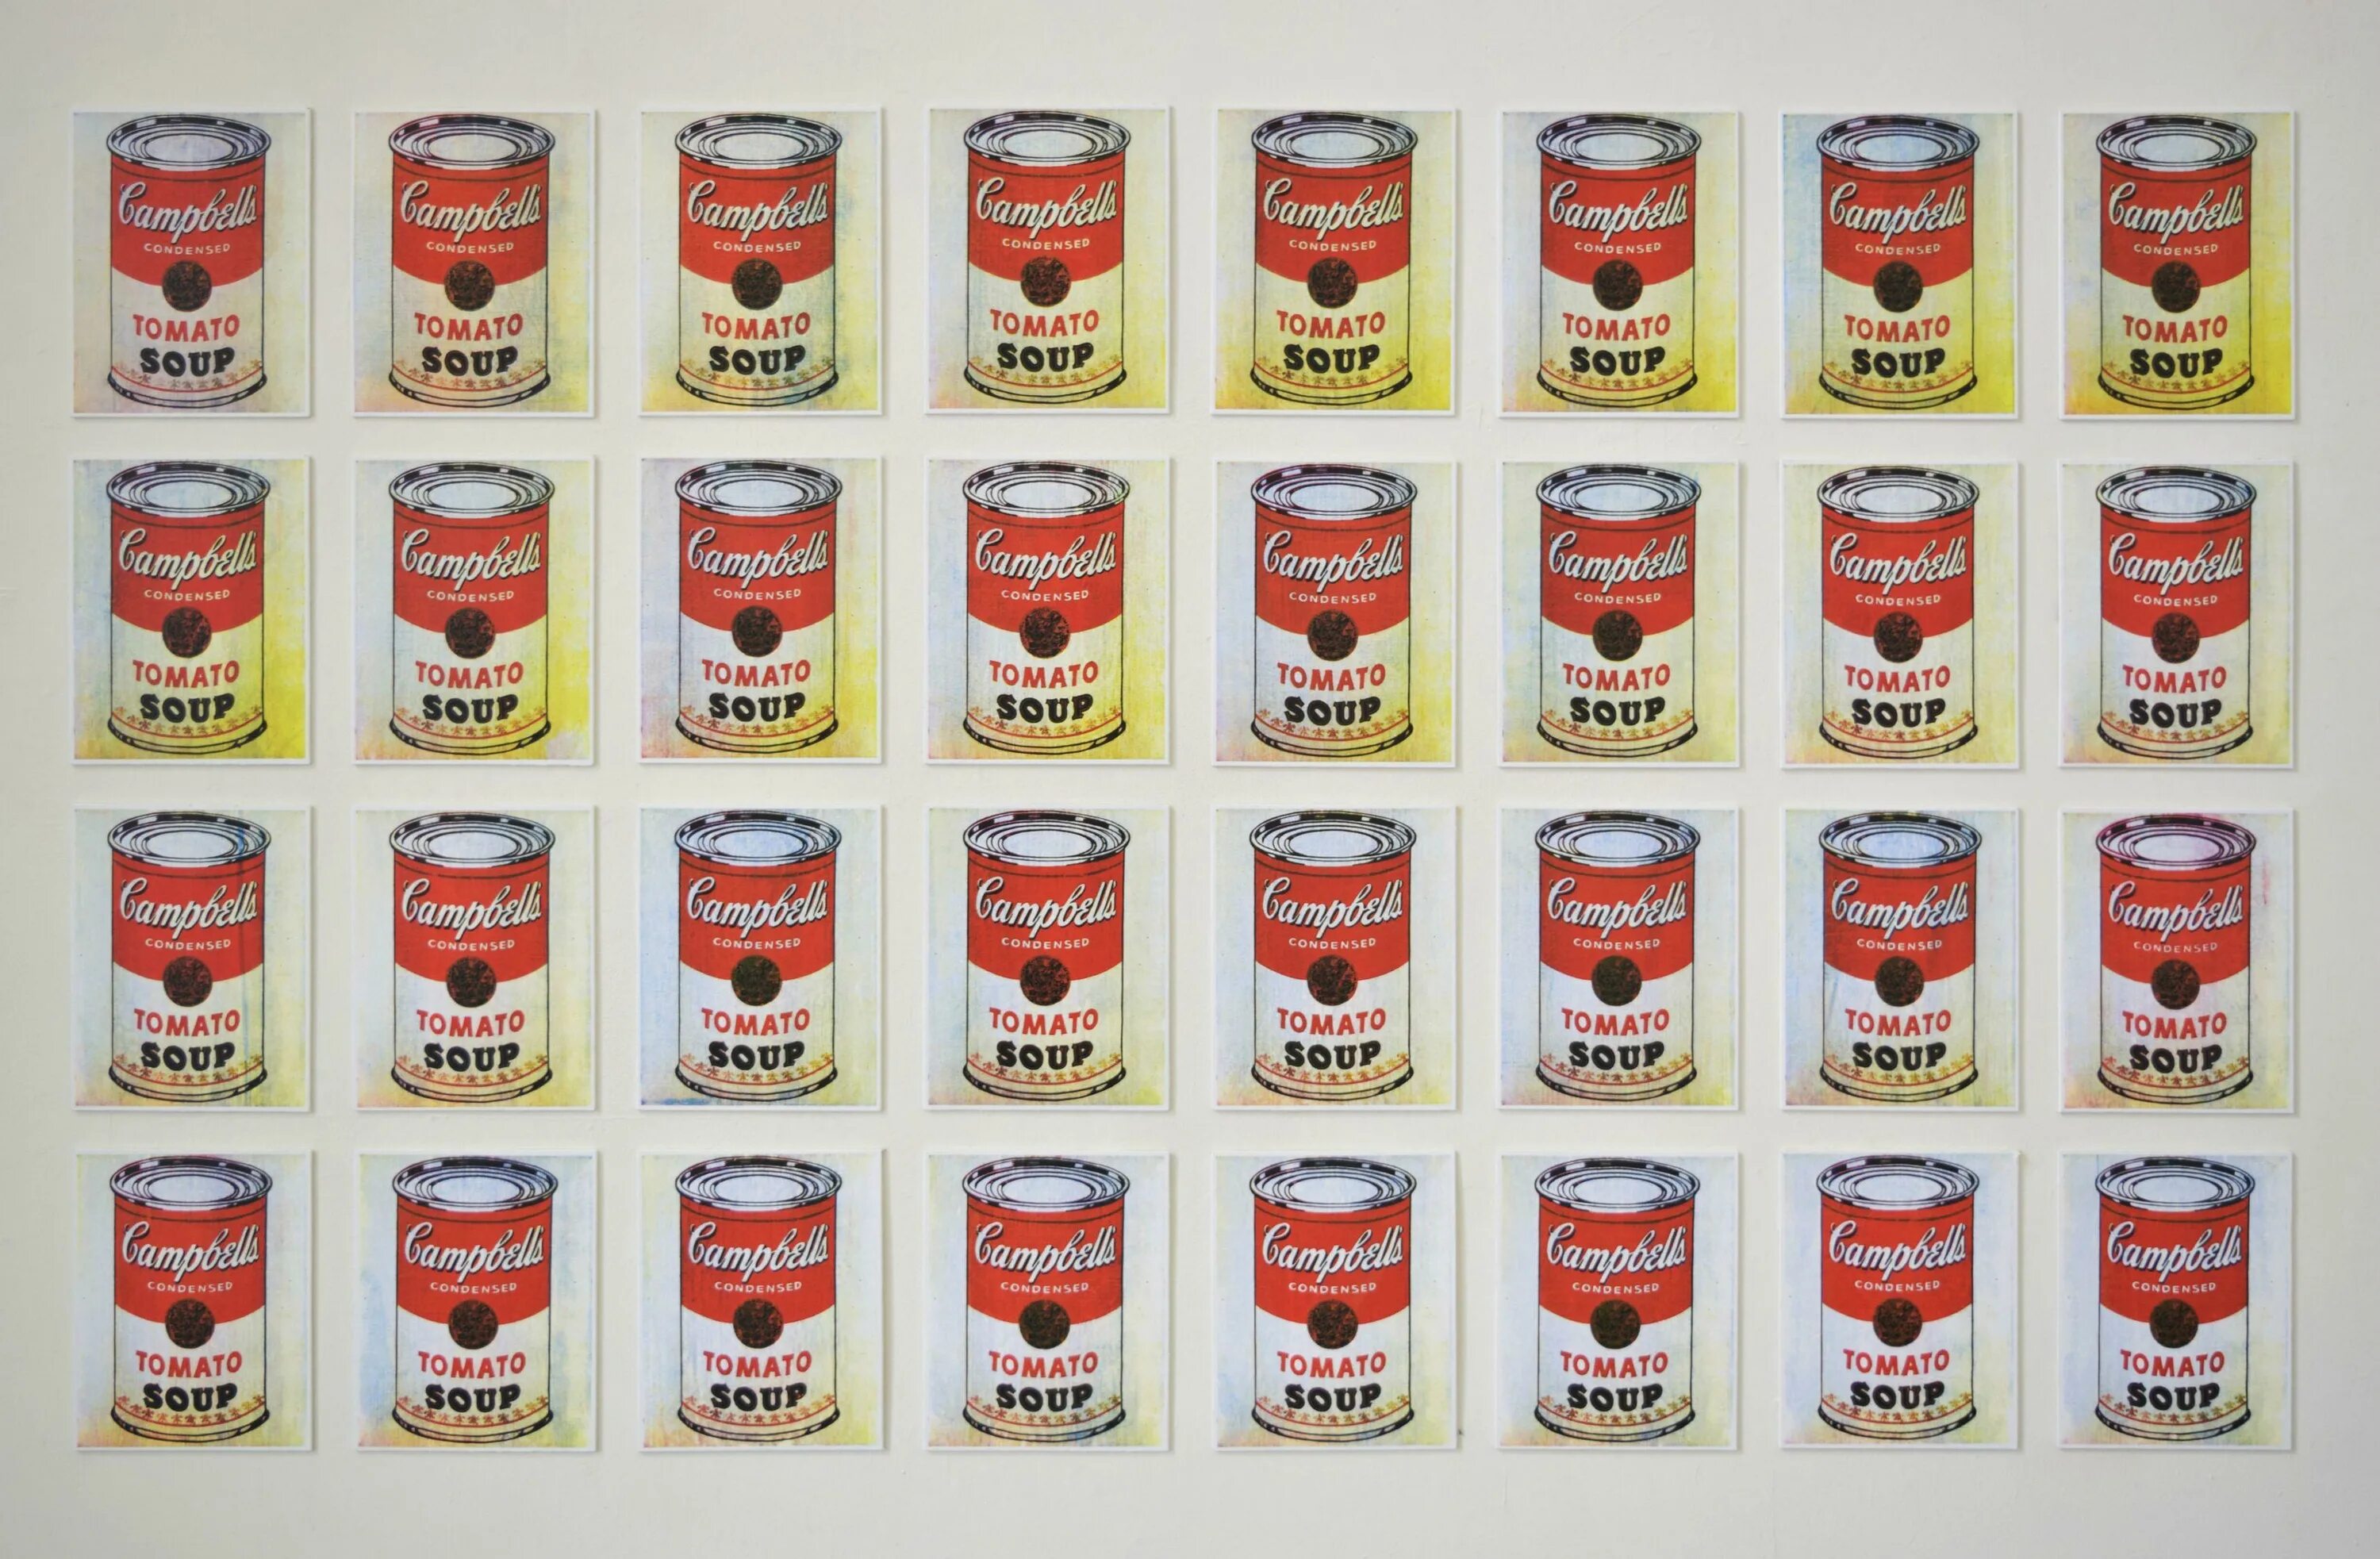 Soup cans. Уорхол суп Кэмпбелл. Энди Уорхол Кэмпбелл. Энди Уорхол суп “Кэмпбелл”, 1962. Энди Уорхол картины томатный суп.